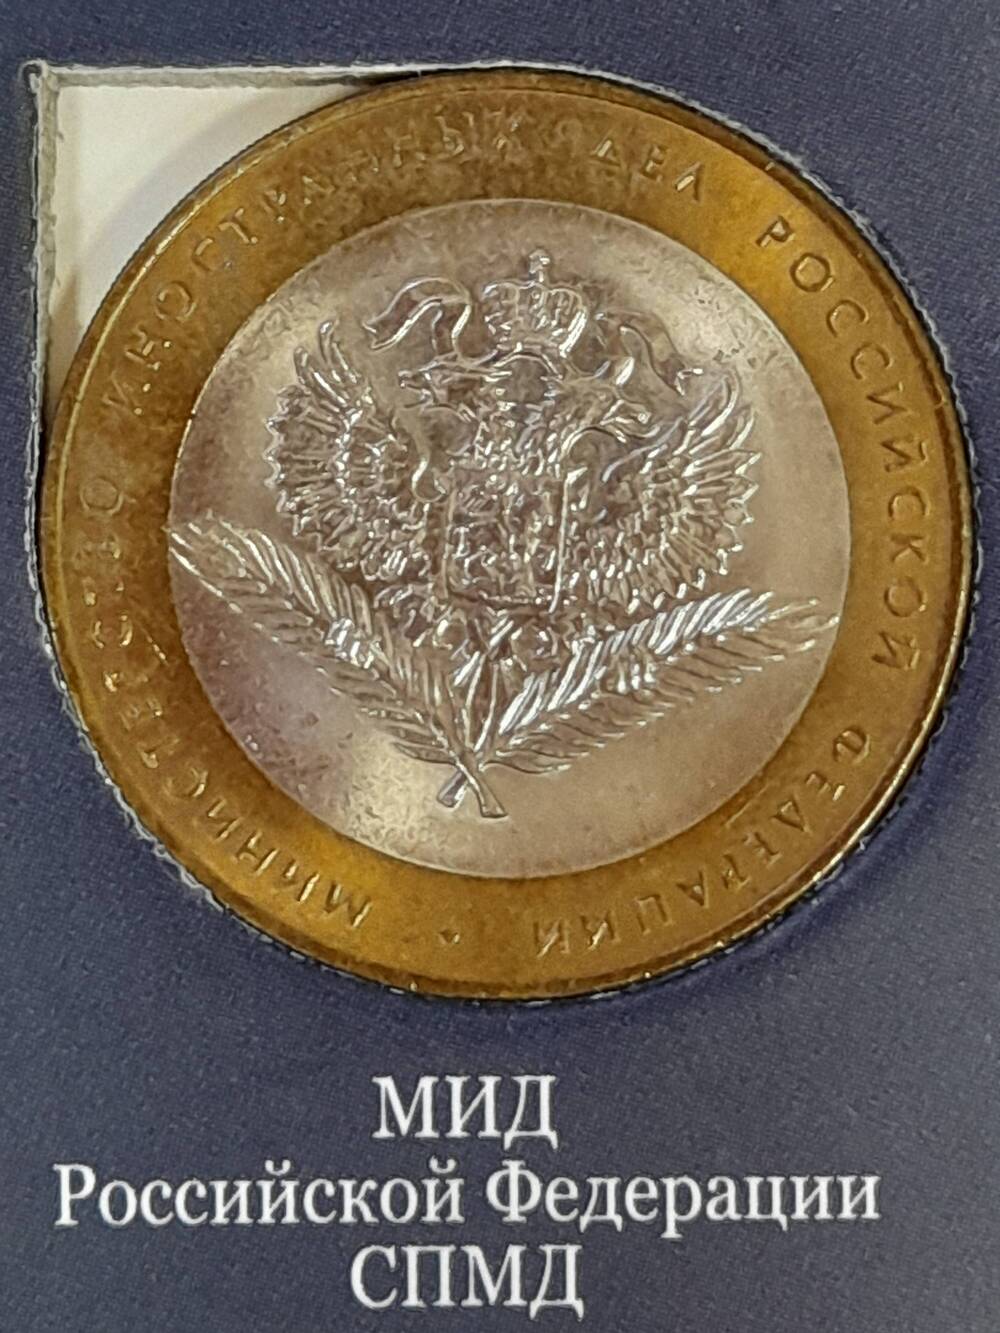 Монета памятная 10 РУБЛЕЙ. МИД Российской Федерации 2002 г. Россия